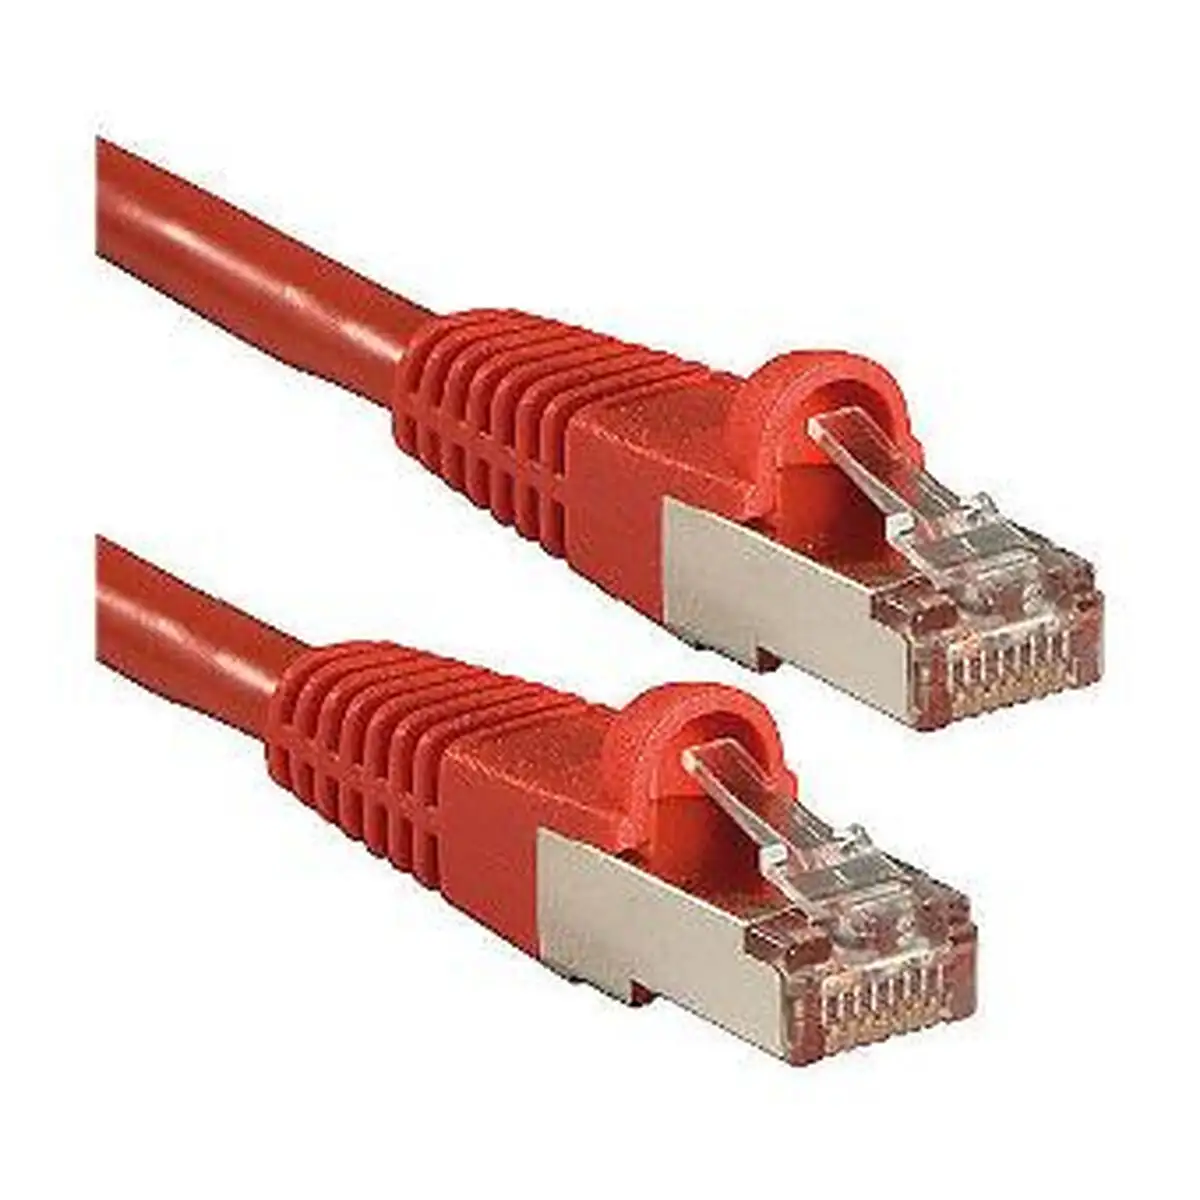 Cable reseau rigide utp 6eme categorie lindy 47165 3 m rouge 1 unites_7598. DIAYTAR SENEGAL - L'Art de Trouver ce que Vous Aimez. Plongez dans notre assortiment varié et choisissez parmi des produits qui reflètent votre style et répondent à vos besoins.